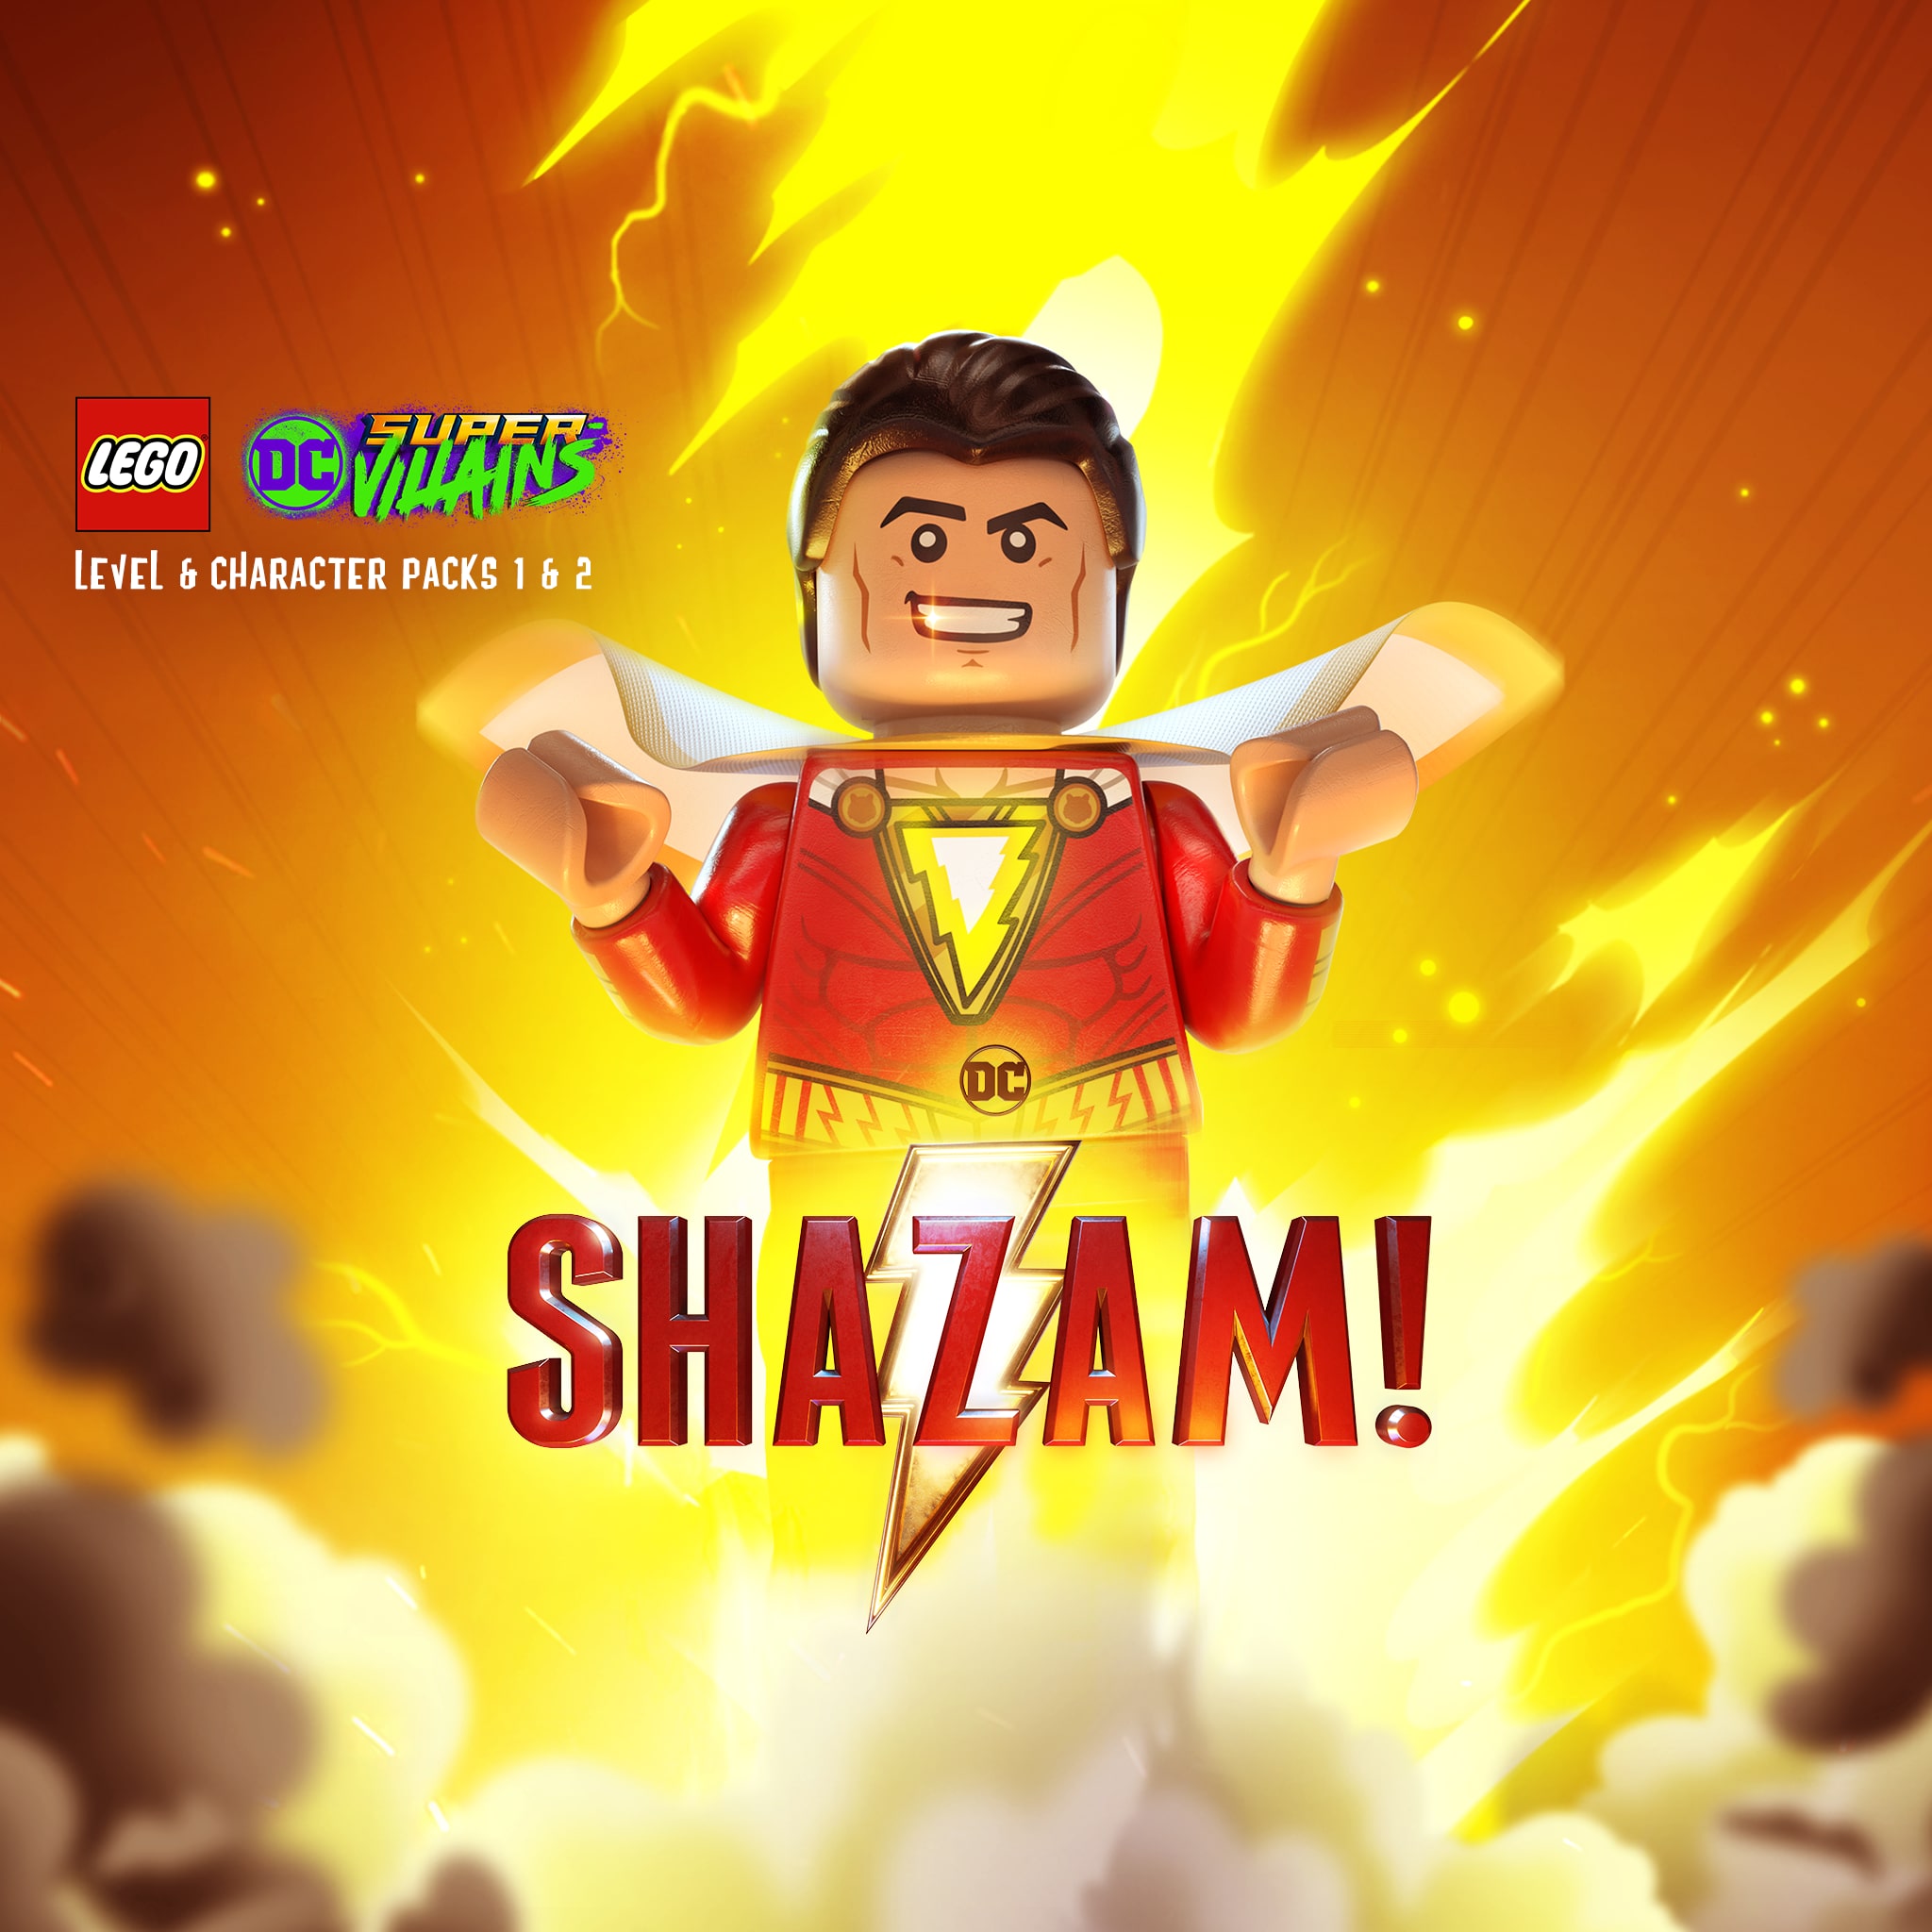 LEGO® DC Super-Villains: Pacchetti 1 e 2 del film Shazam!